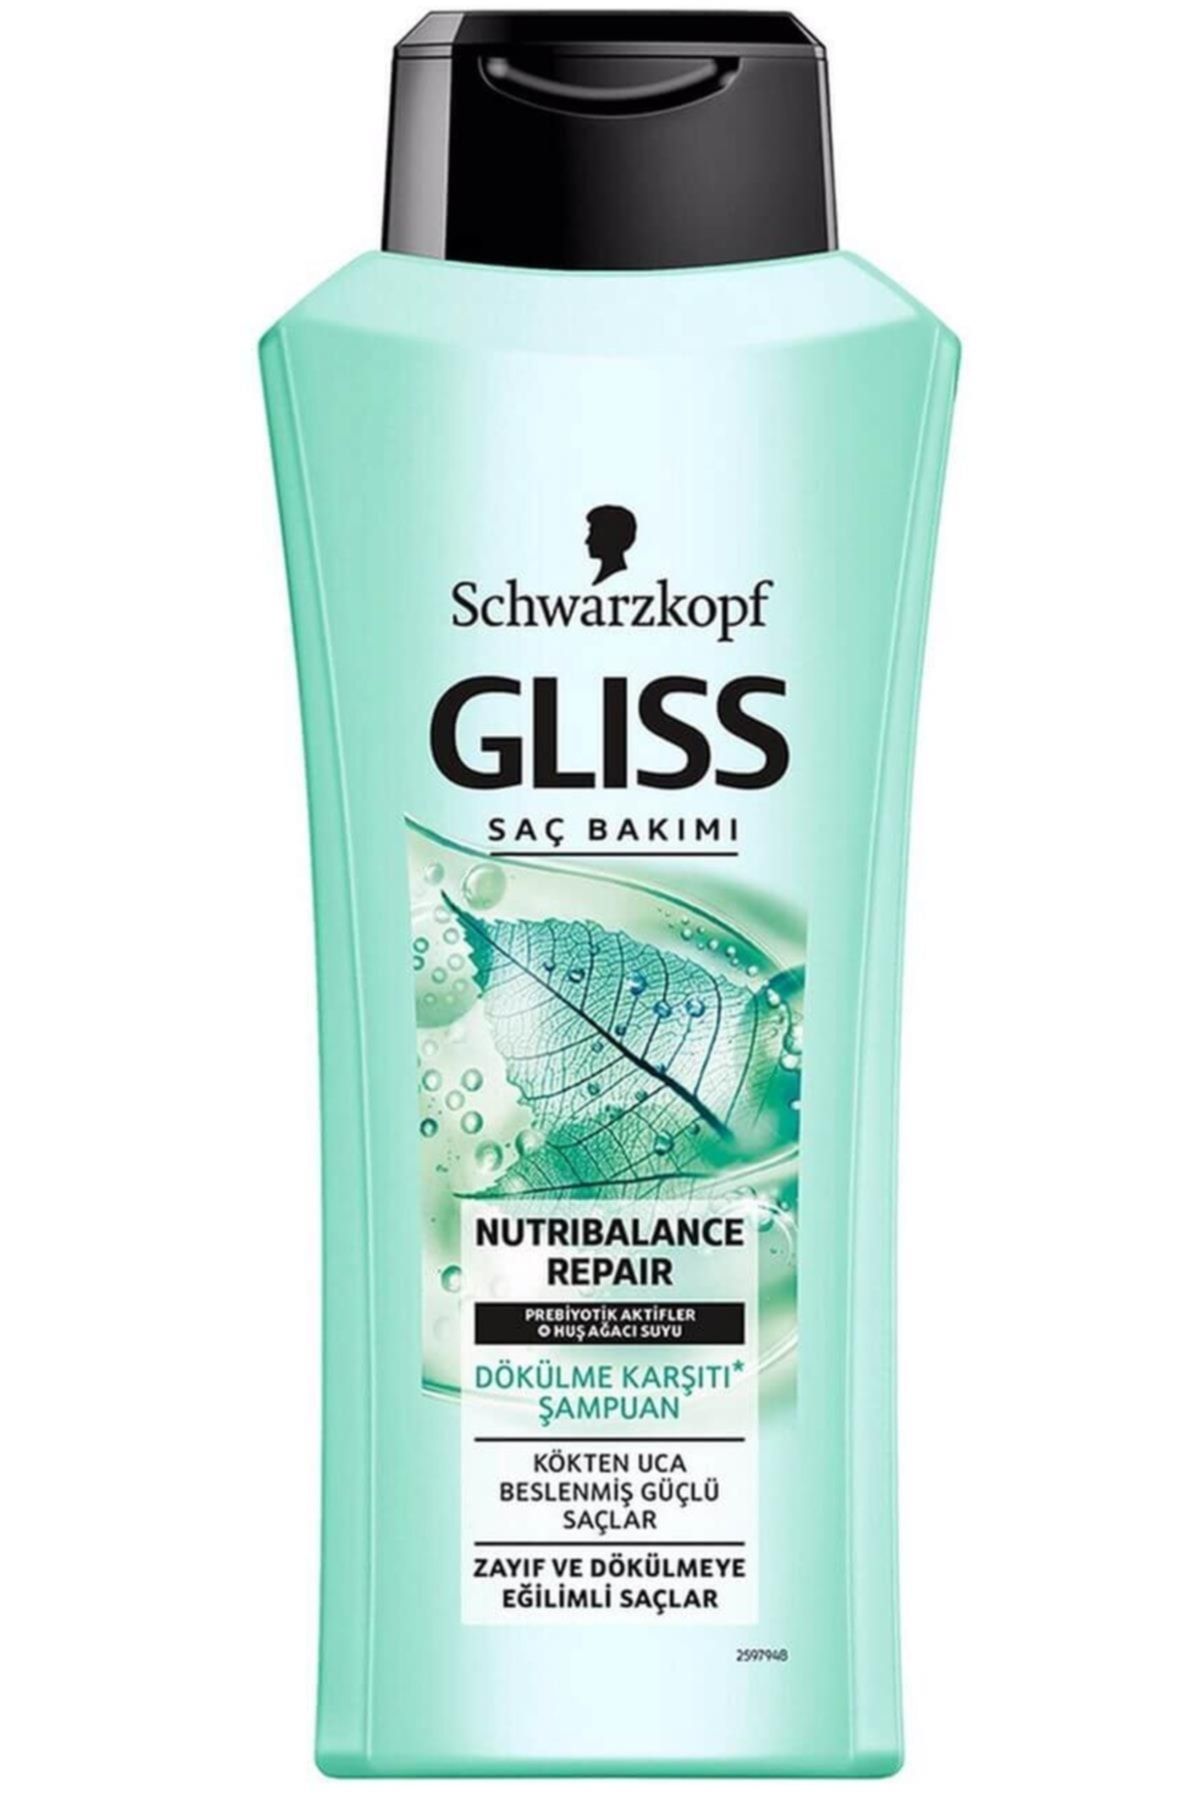 Gliss Marka: Şampuan Nutri Balance Repair 360 Ml Kategori: Şampuan